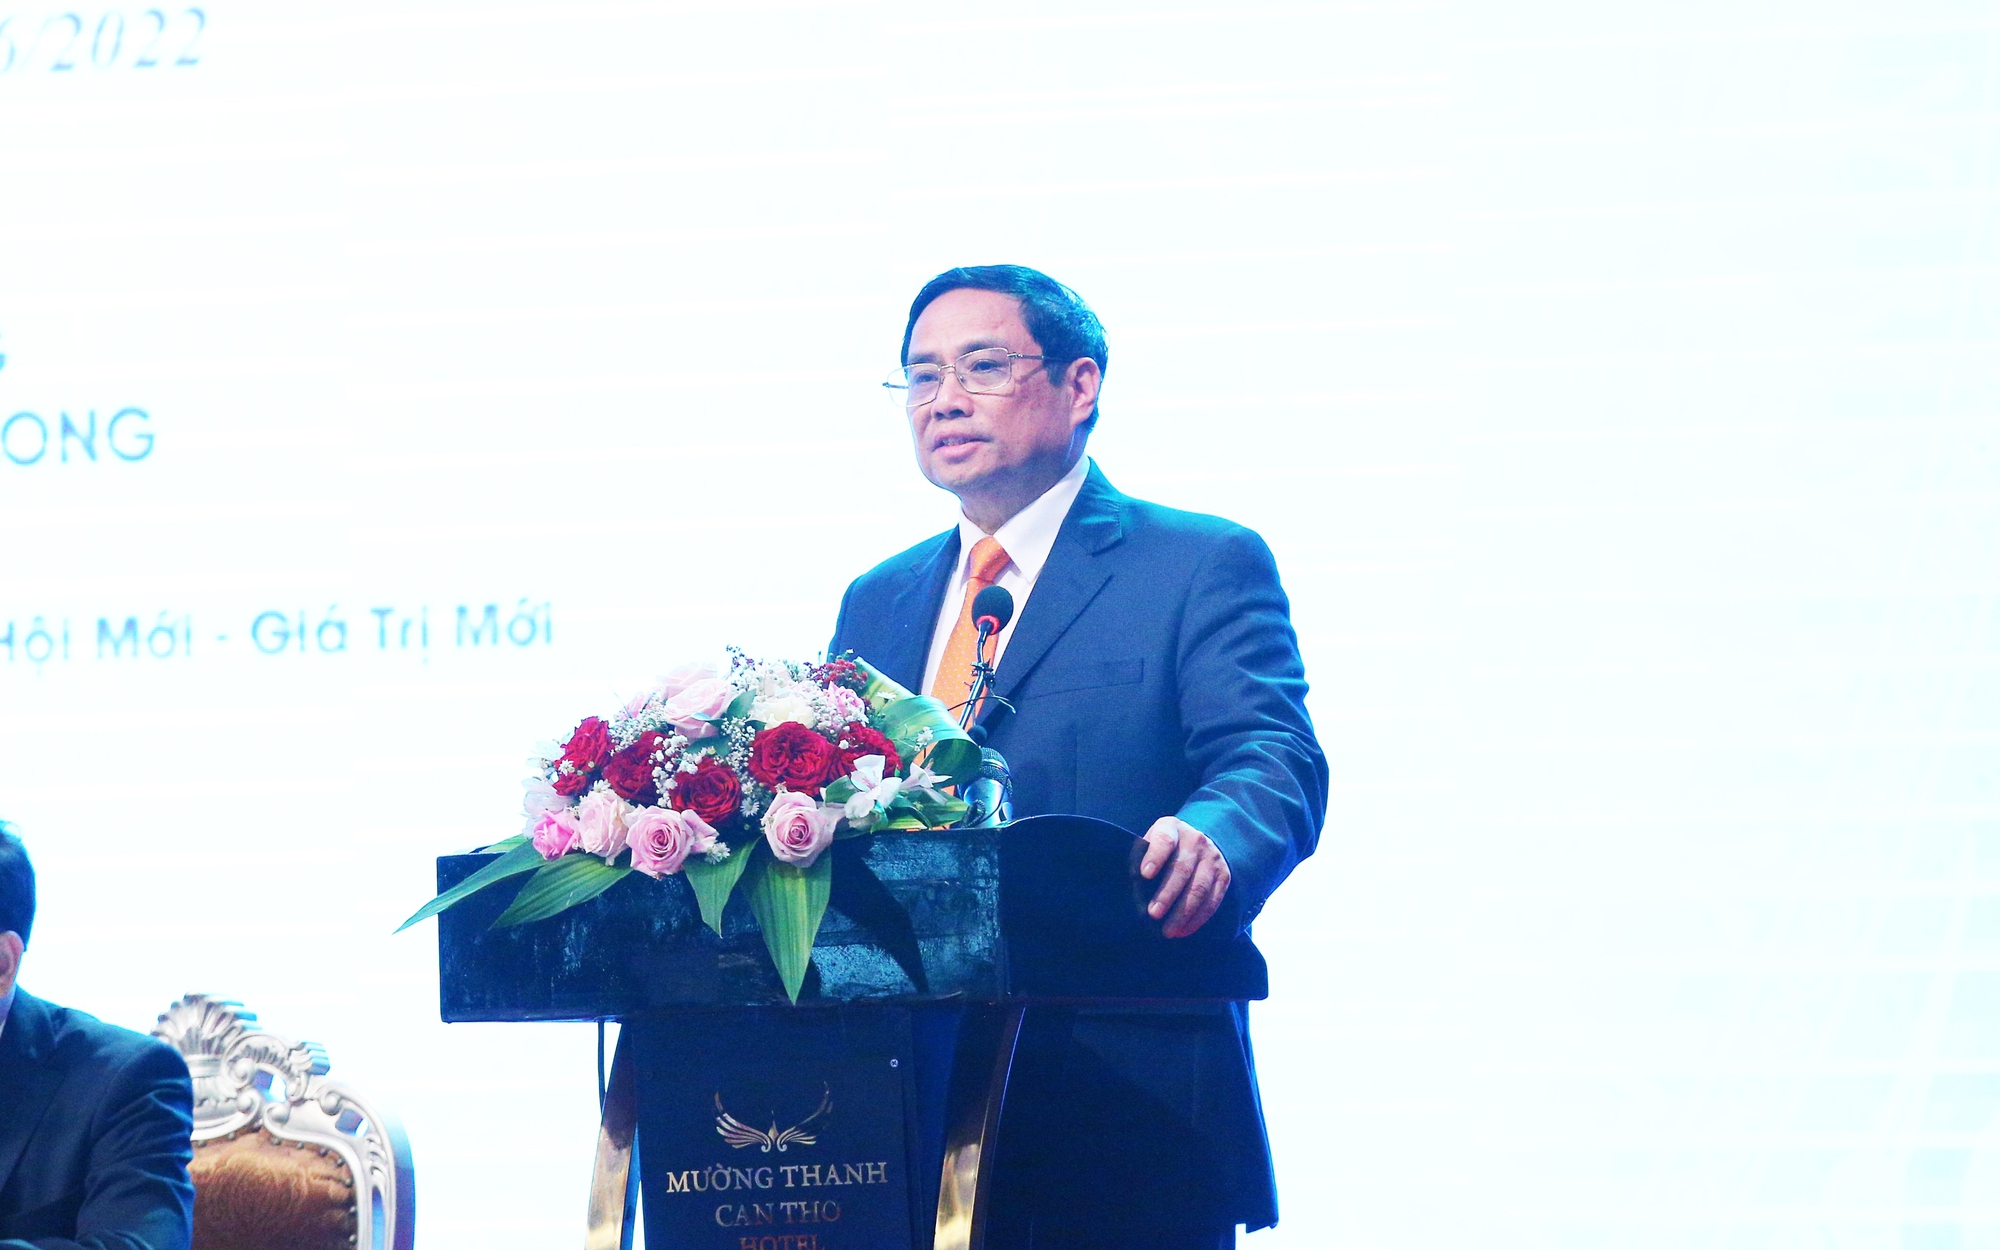 Thủ tướng Phạm Minh Chính: Phải nỗ lực triển khai quy hoạch vùng ĐBSCL sao cho hiệu quả